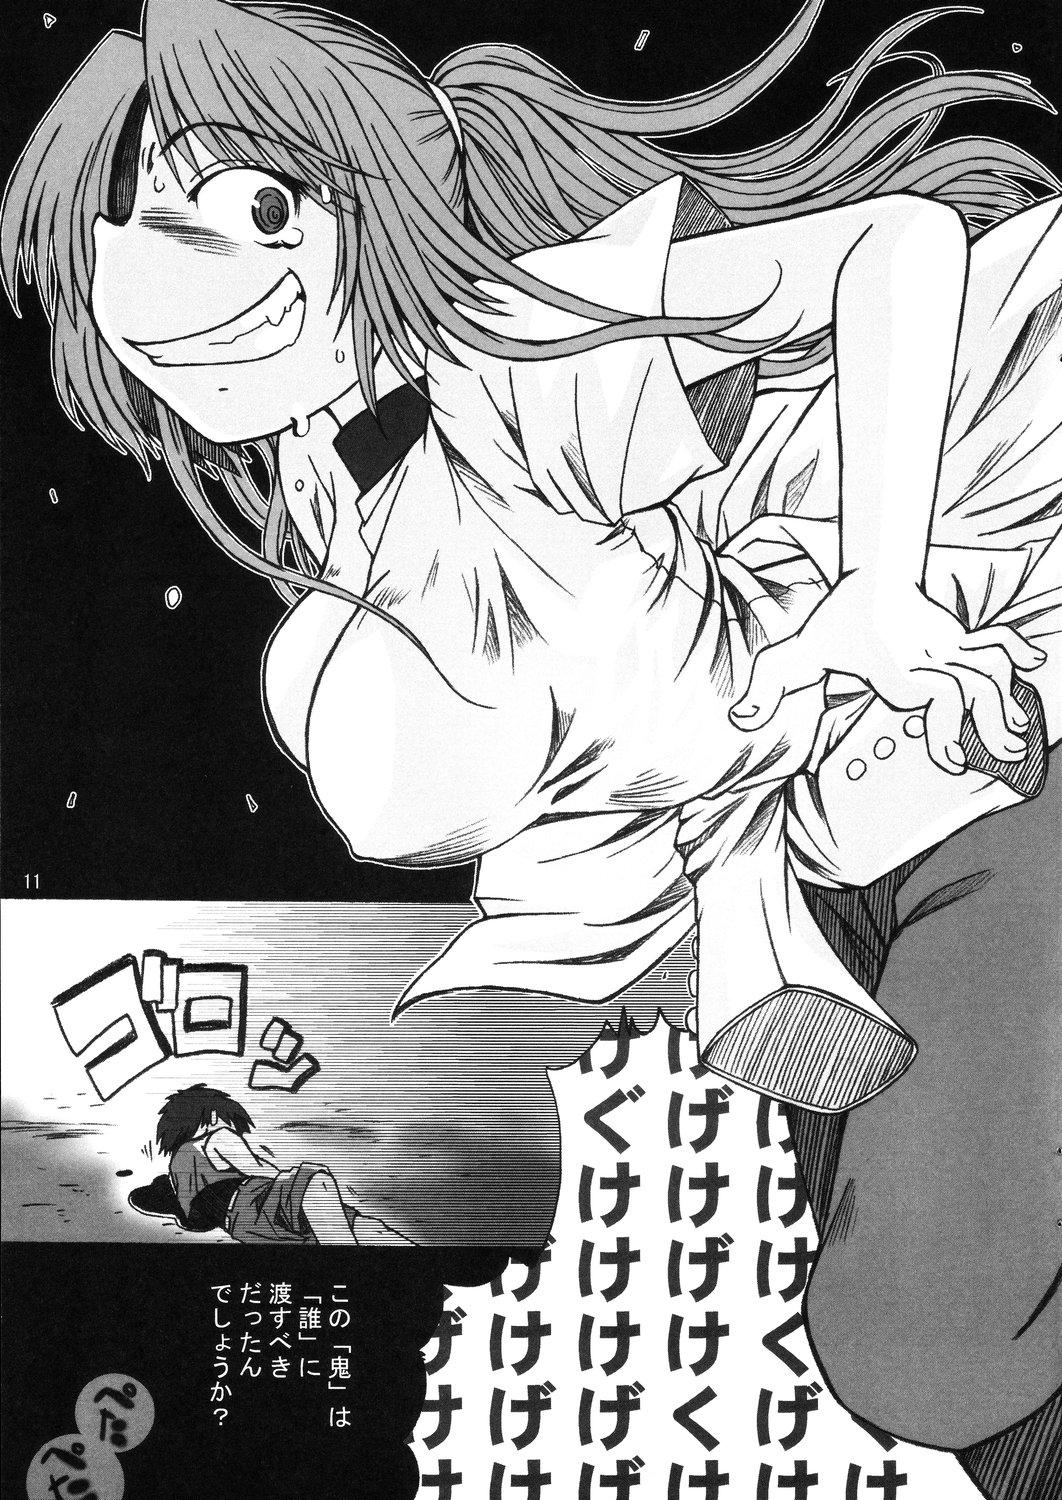 Slut Hinamisawa no hon - Shin Kikoku hen - Higurashi no naku koro ni | when they cry Analplay - Page 11